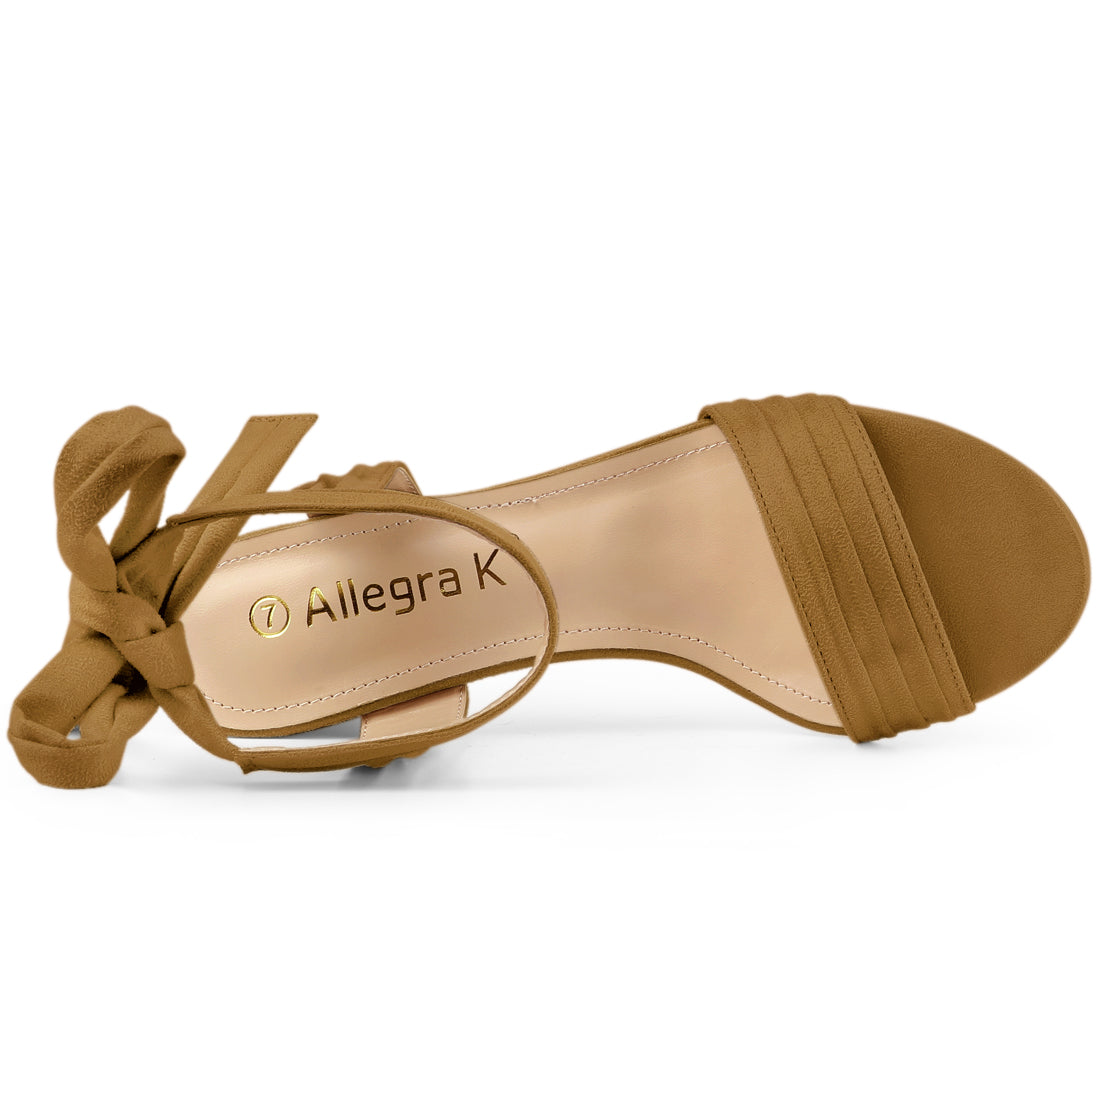 Allegra K Open Toe Ankle Tie Back Block Heel Sandals